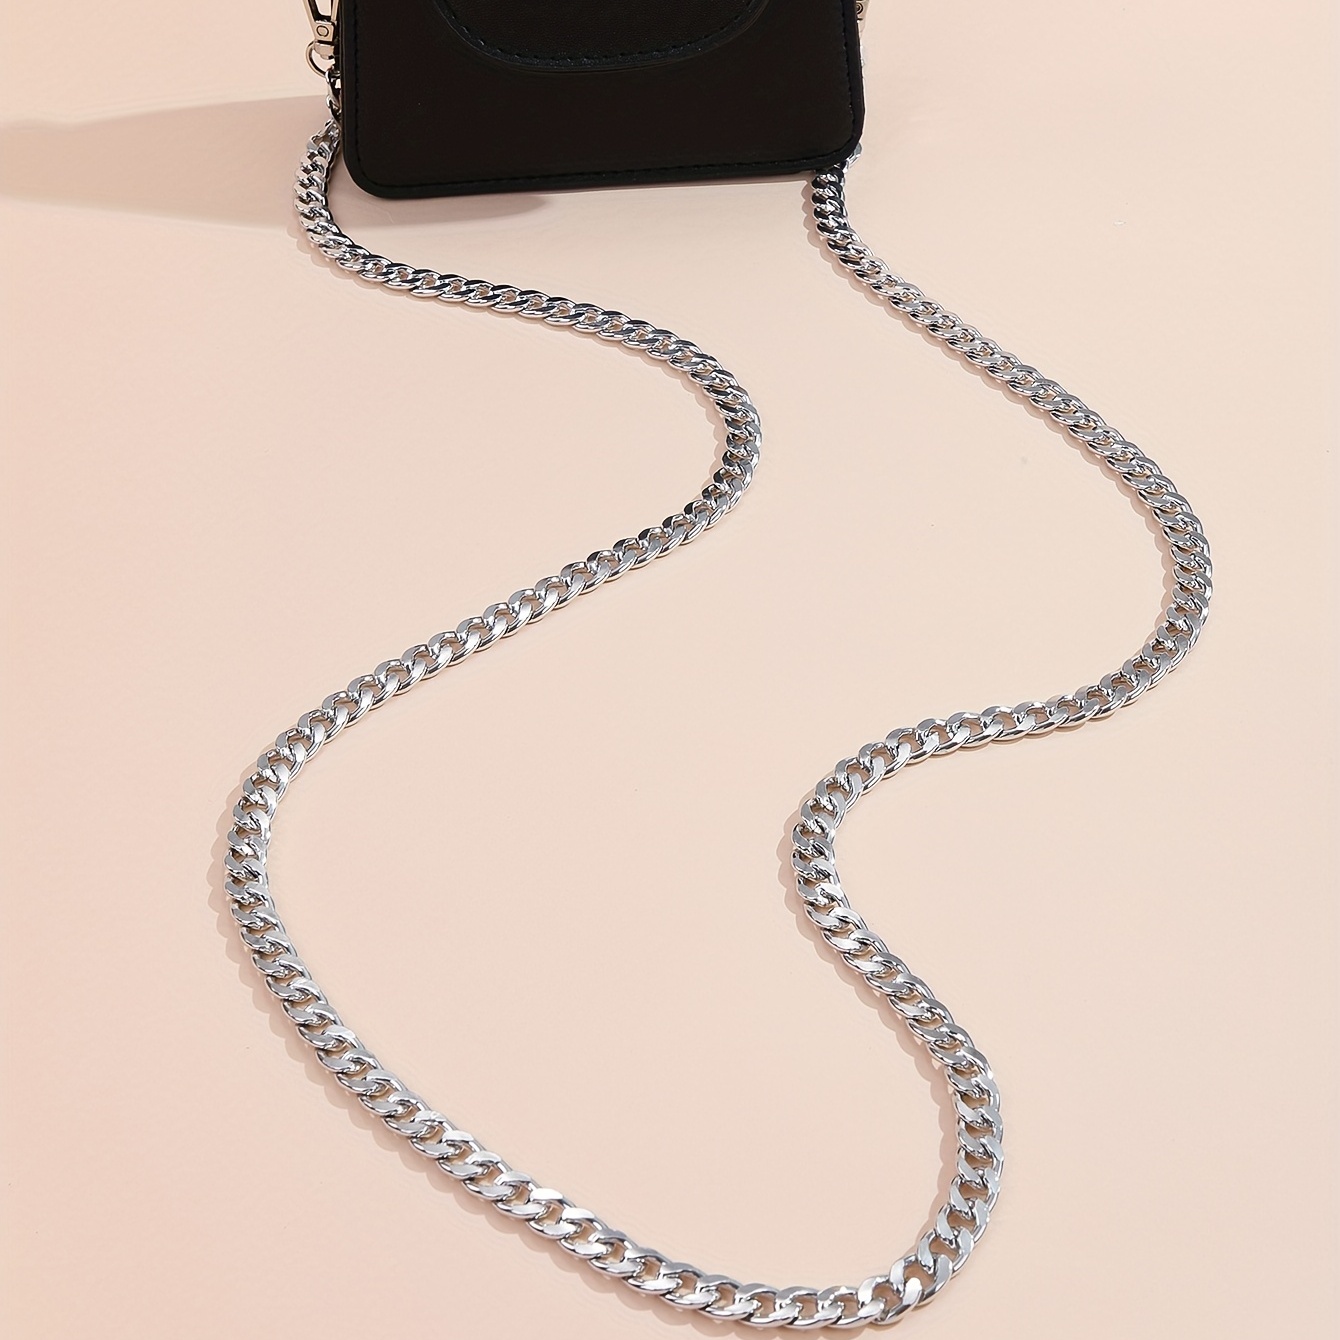 Chaîne métallique pour sac à main avec fermoir mousqueton, longueur 120 cm